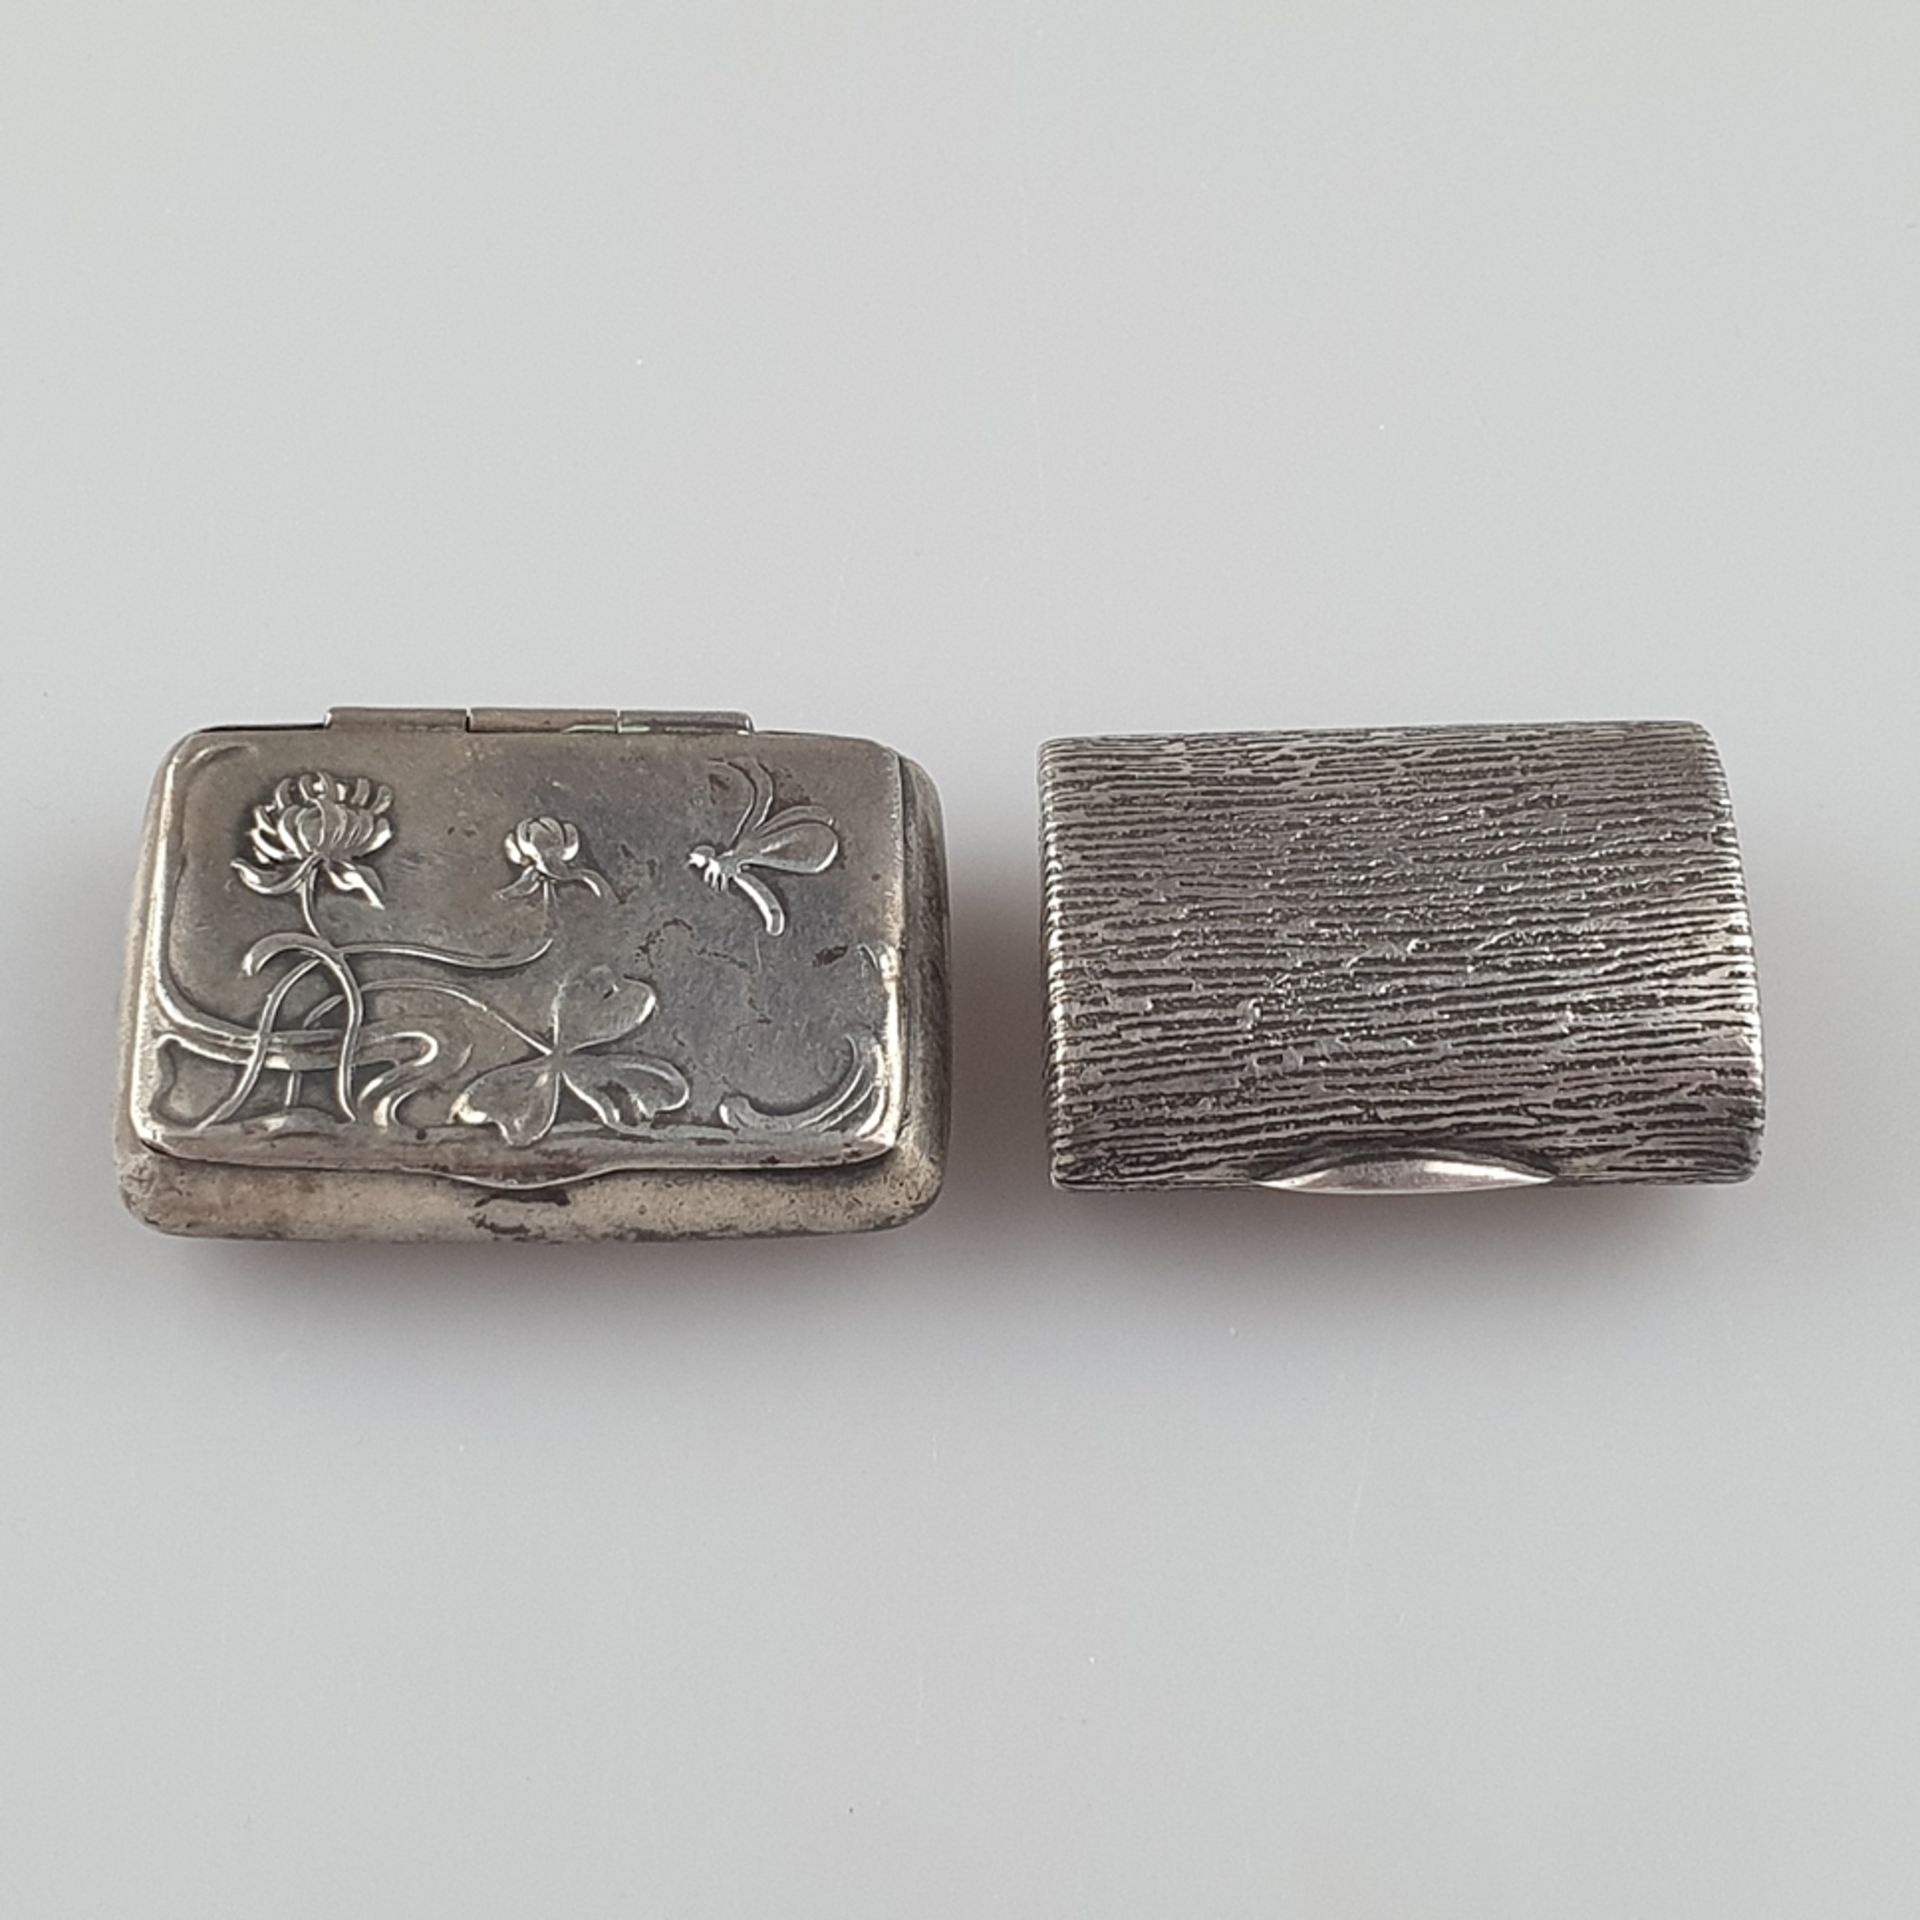 Zwei Pillendosen - Silber, jeweils mit Scharnierdeckel und Daumengriff, 1x mit Jugendstil-Relief, u